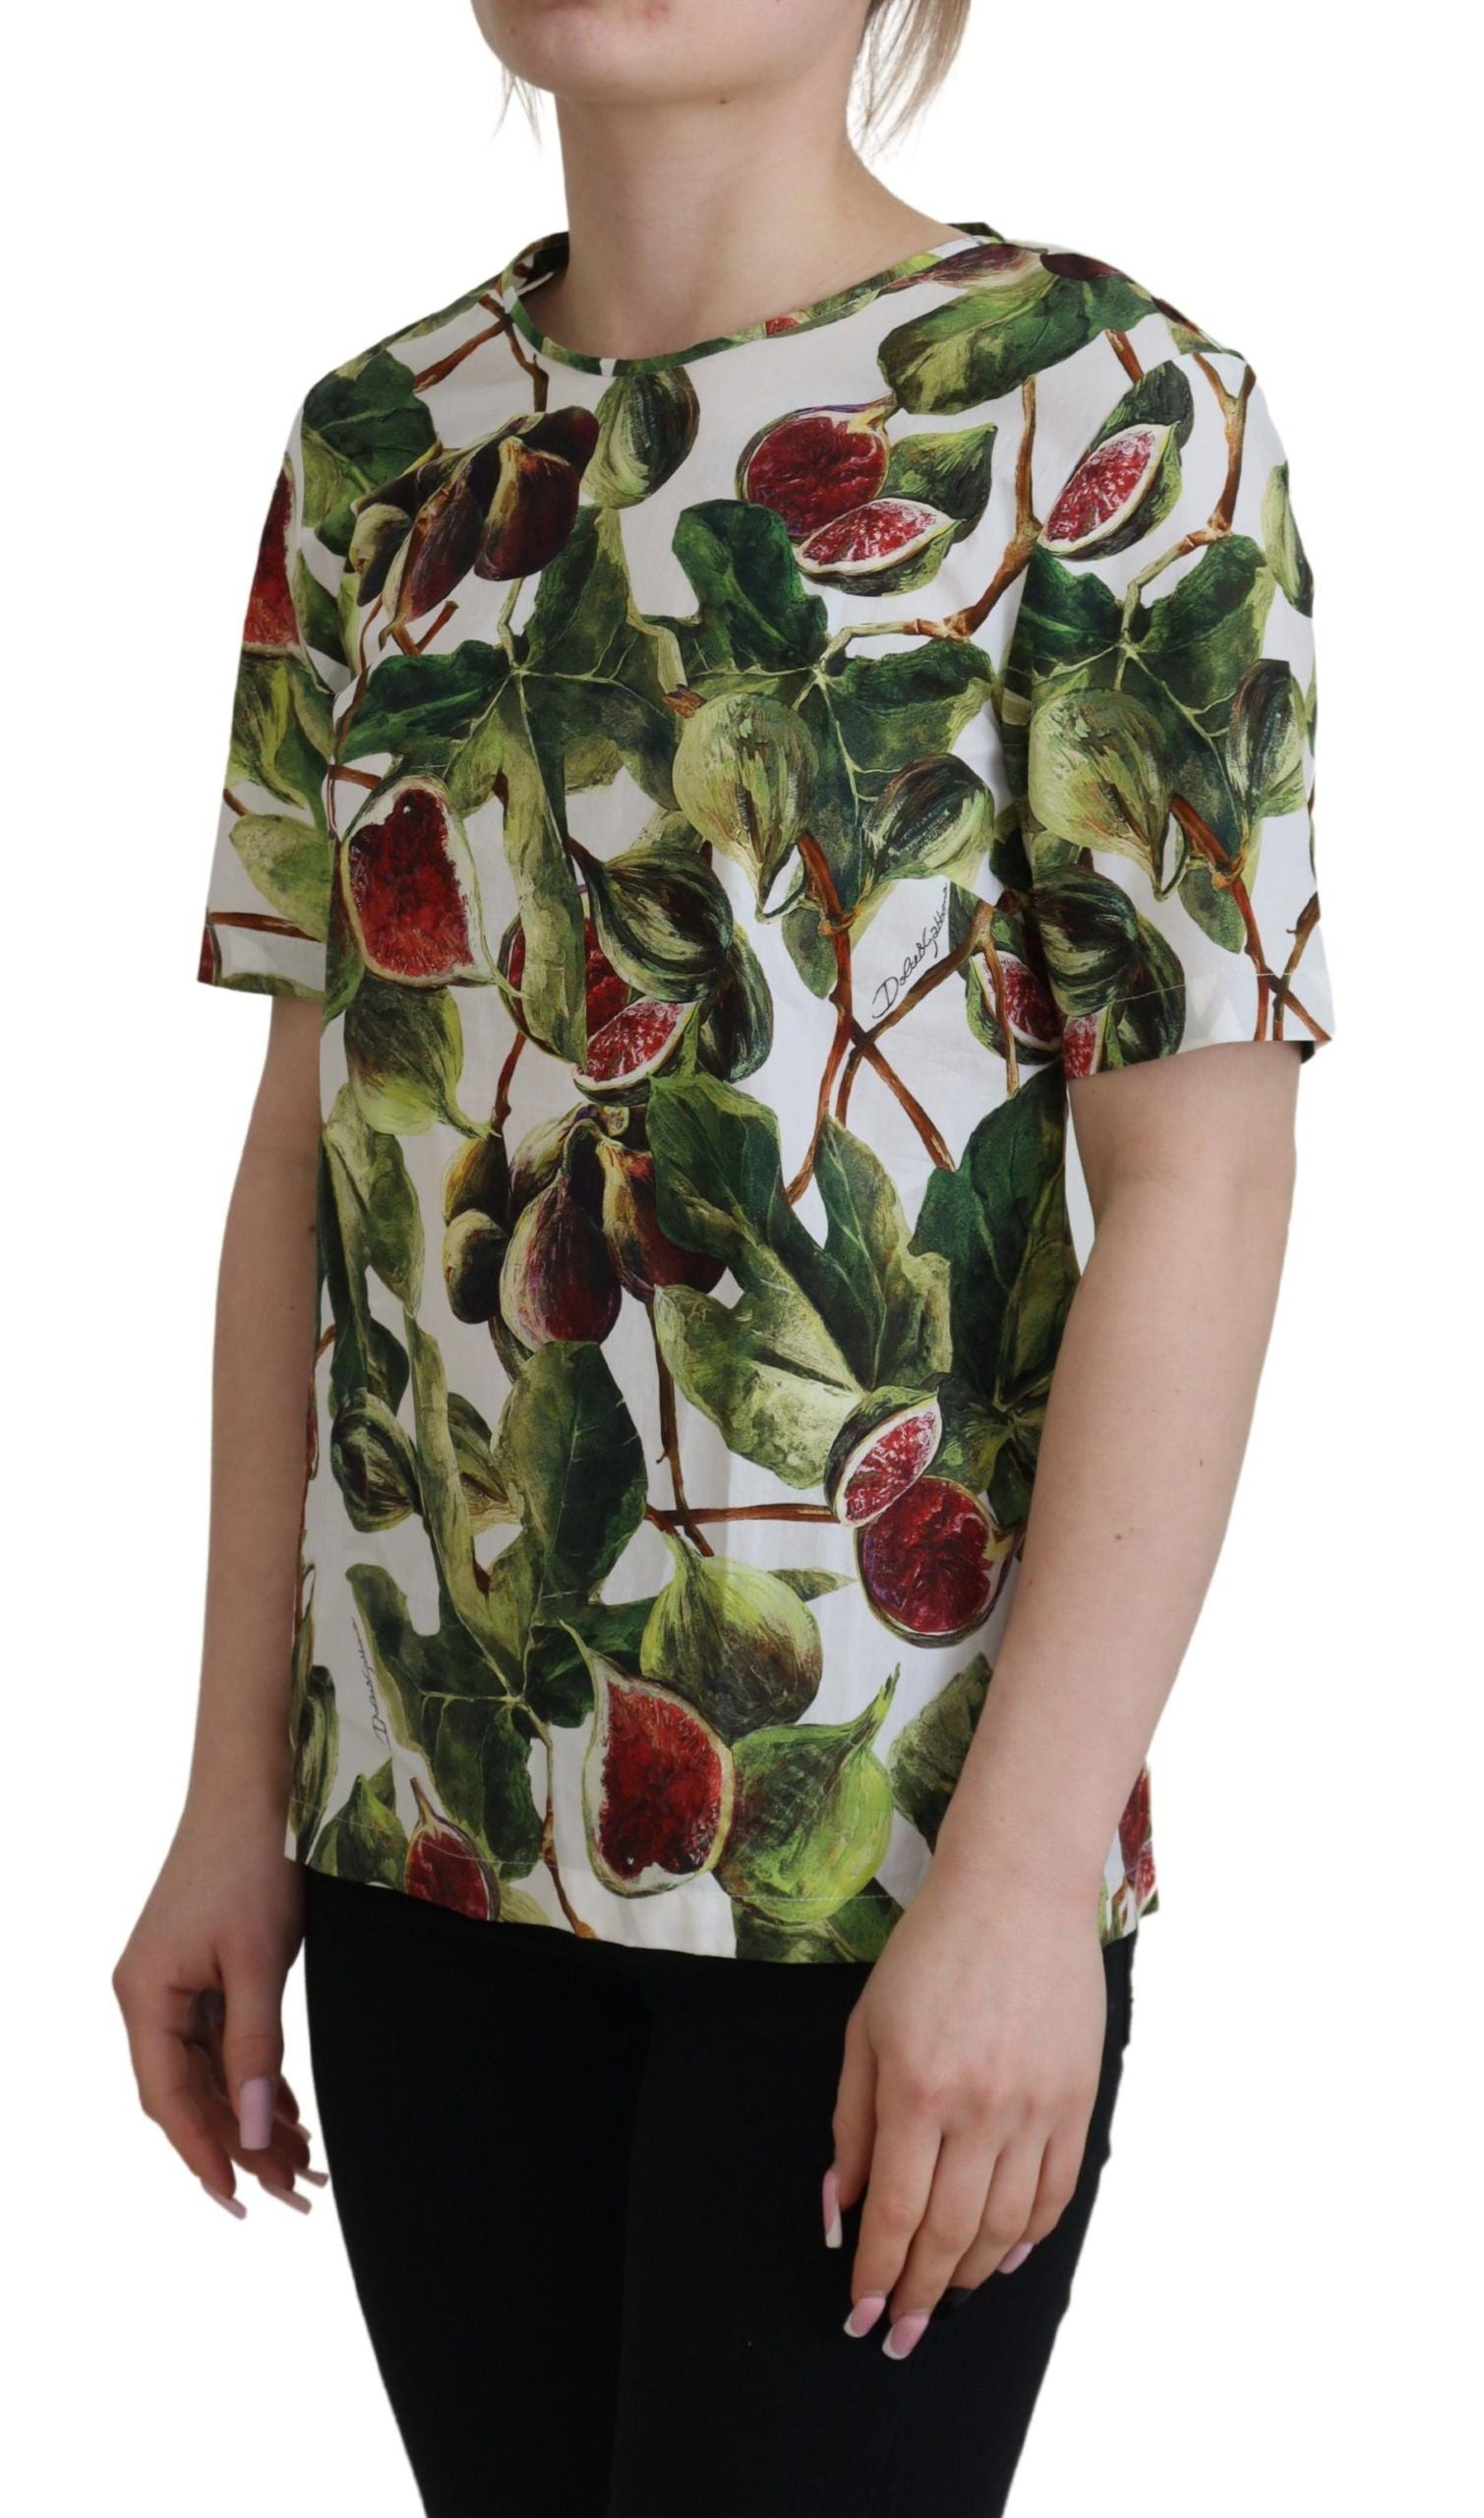 Crew-neck Cotton Top Blouse Fruit T-shirt